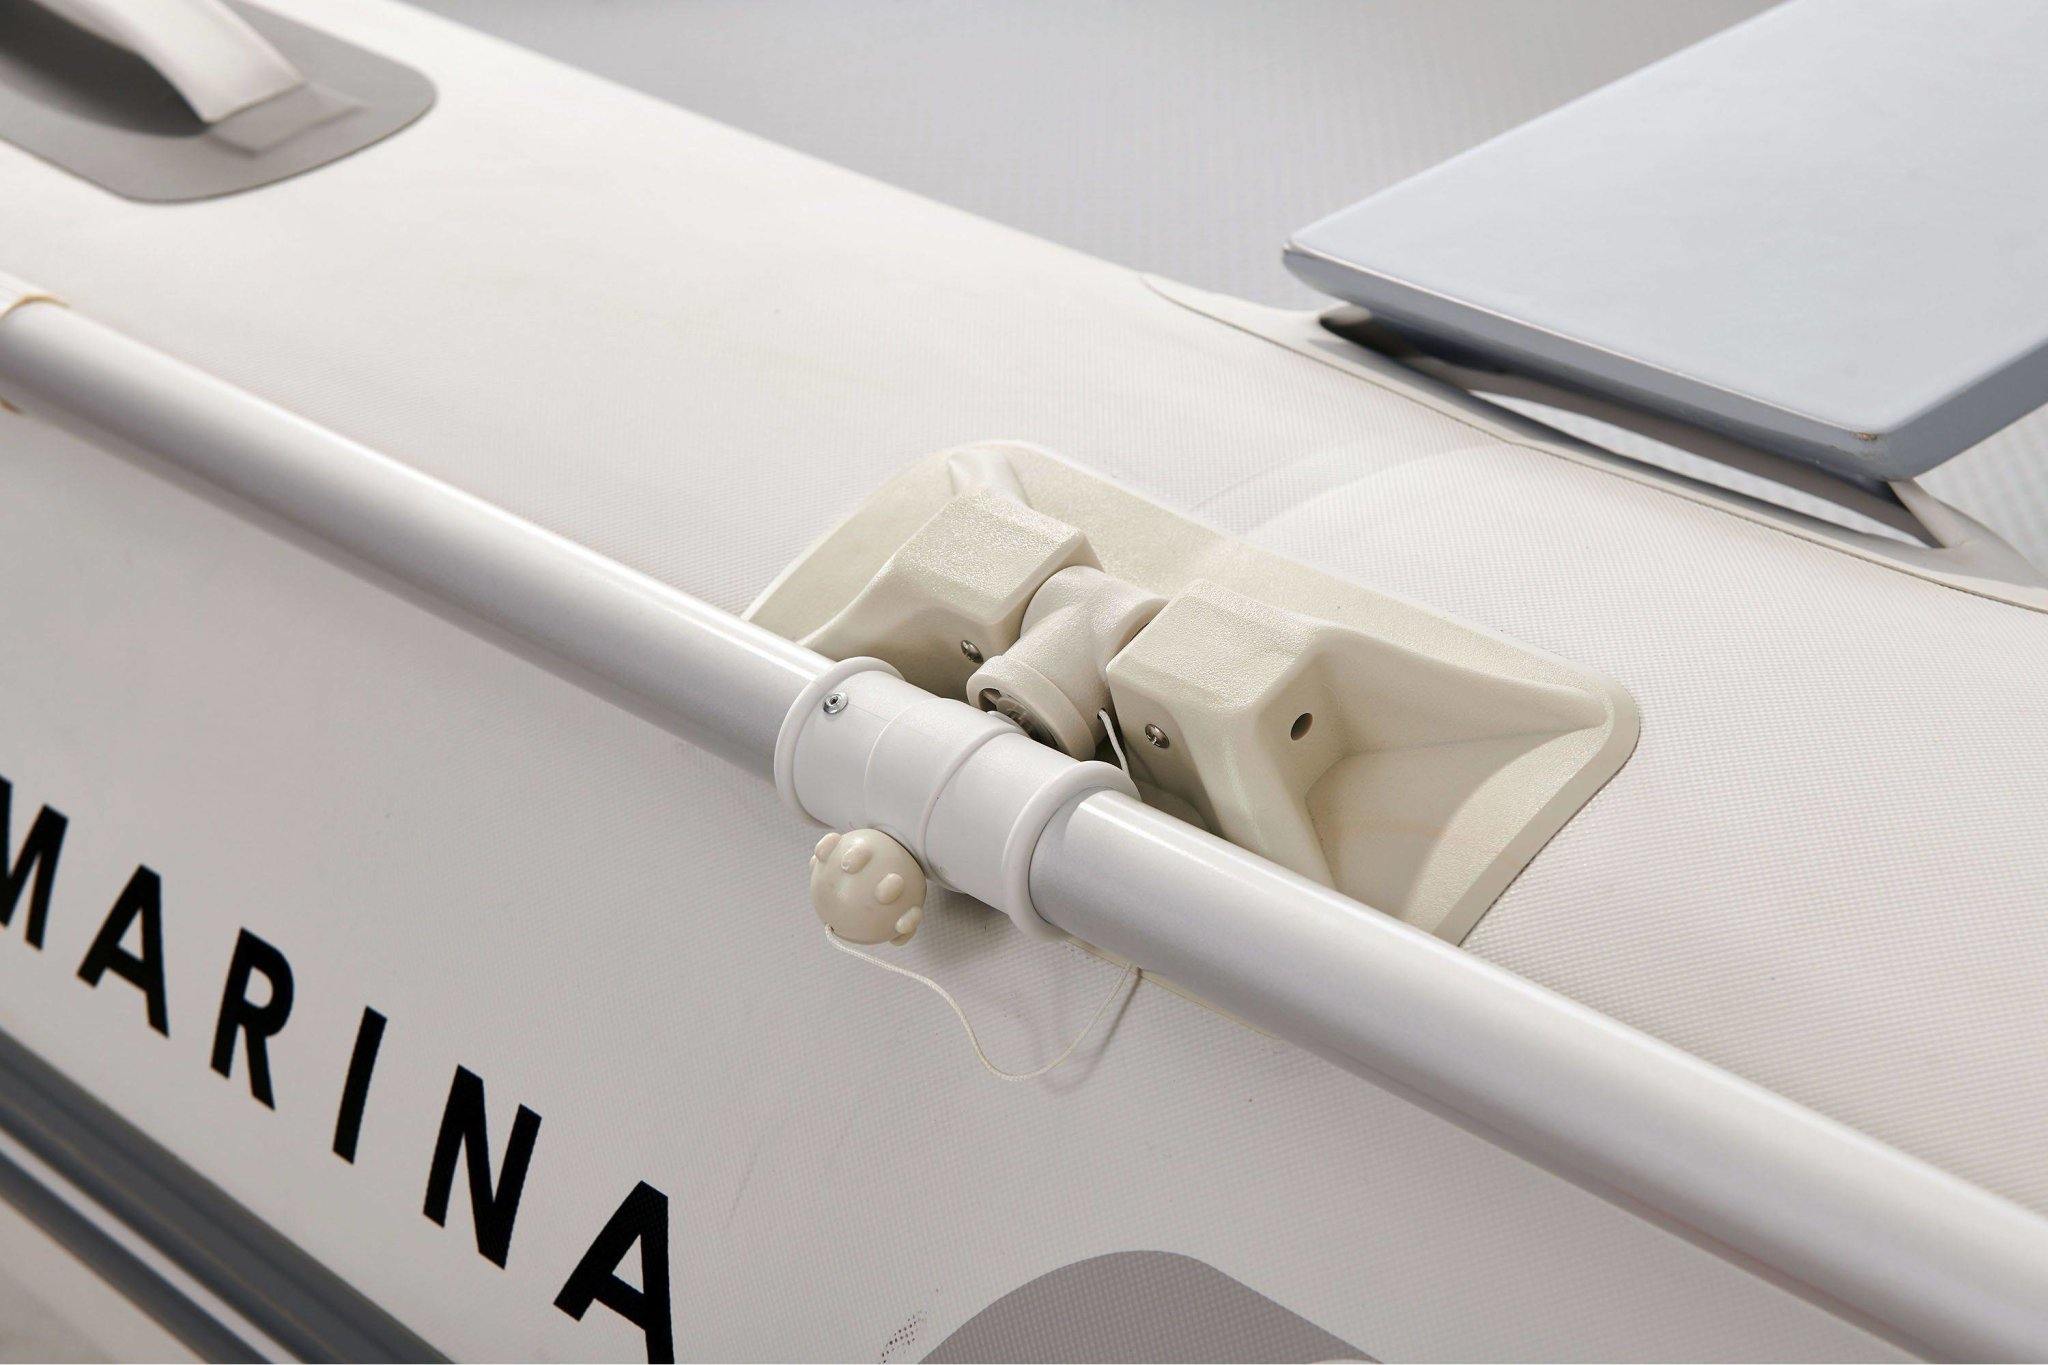 Aircat 9'4'' Inflatable Catamaran - Dti Direct USA